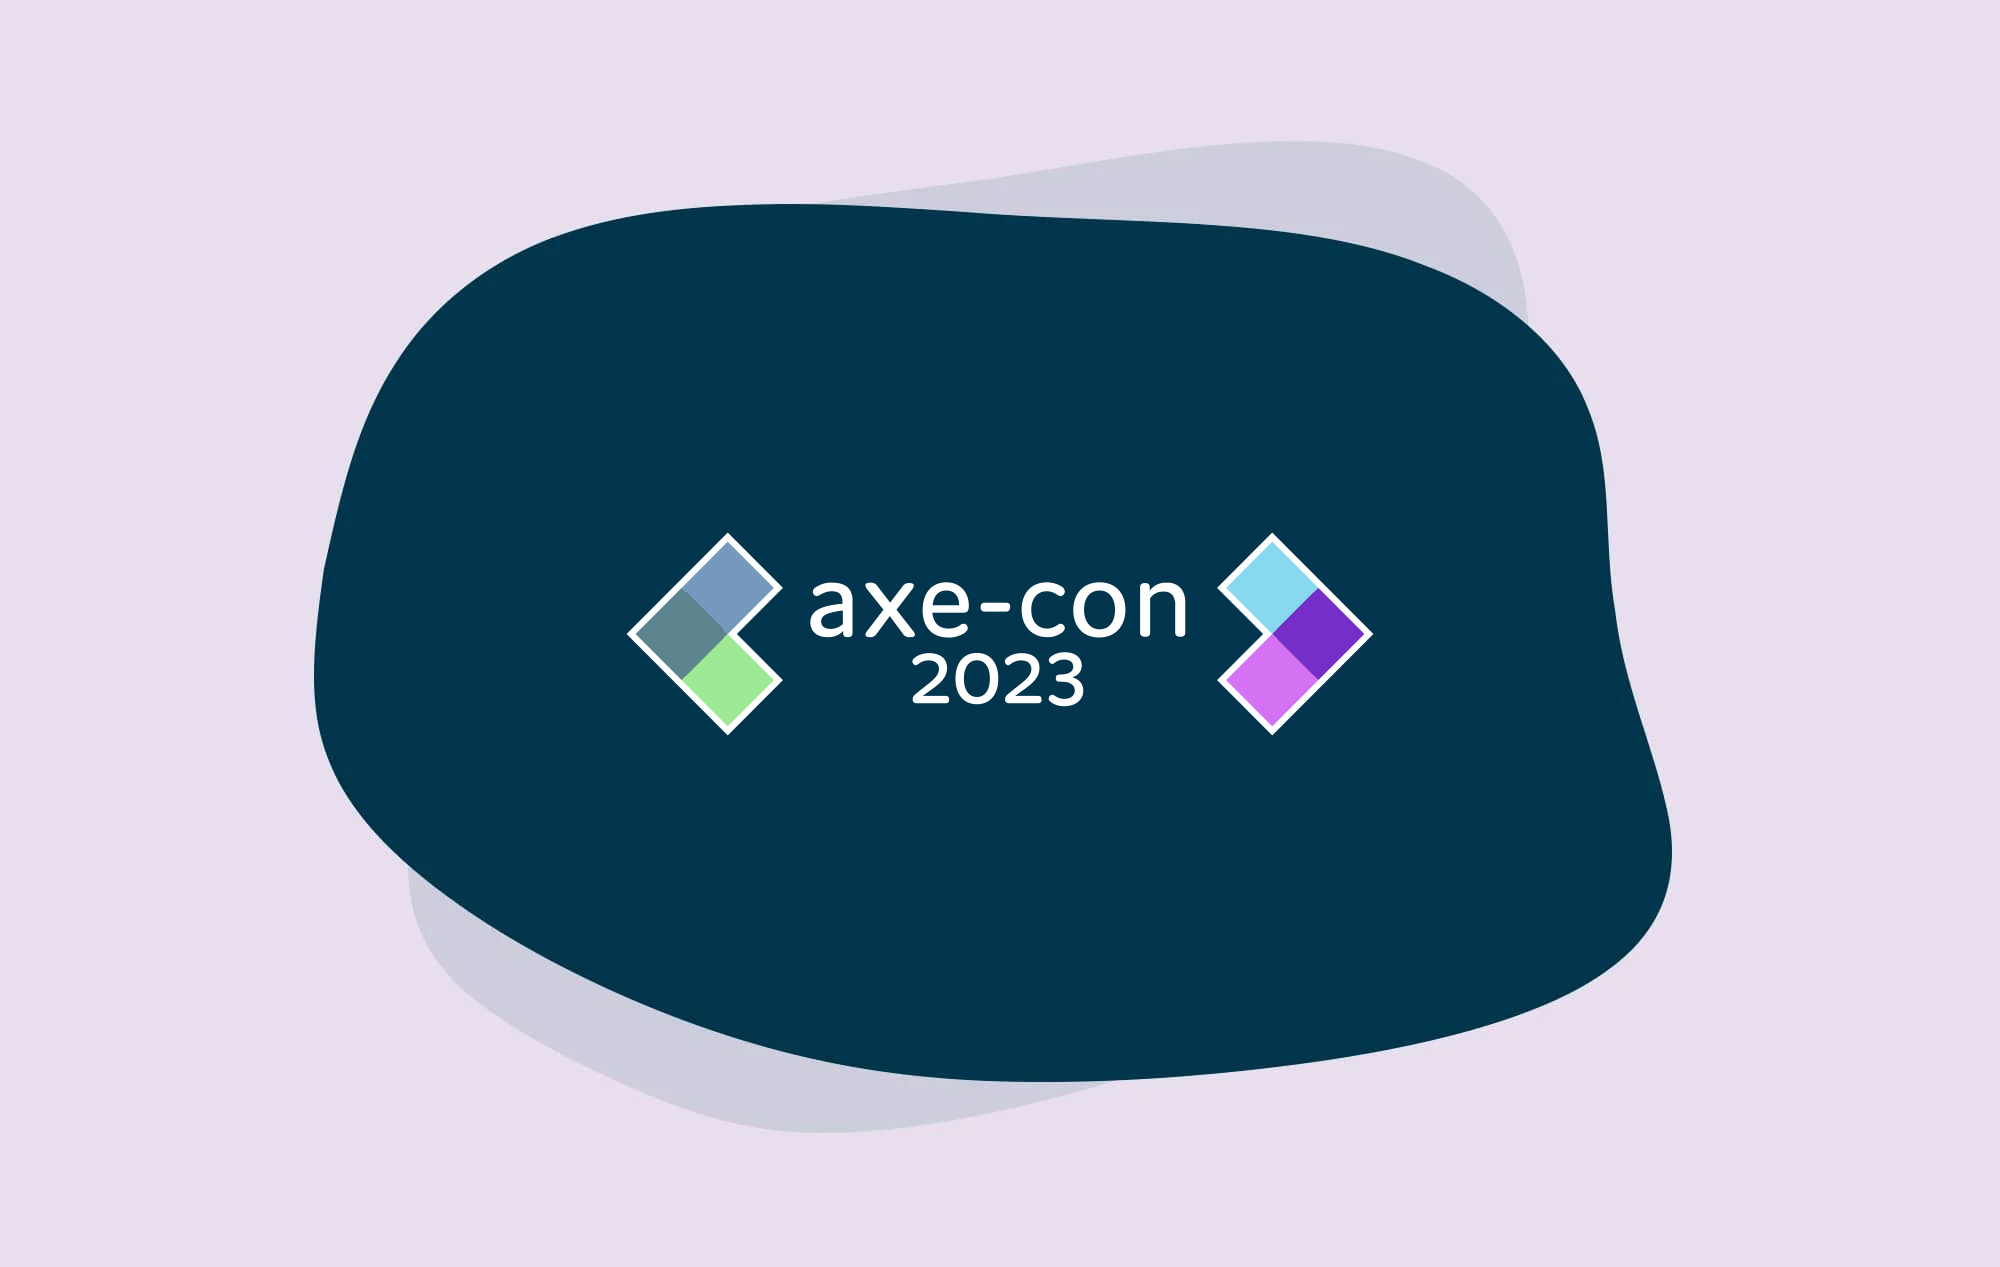 Accessibility Event Spotlight: axe-con 2023